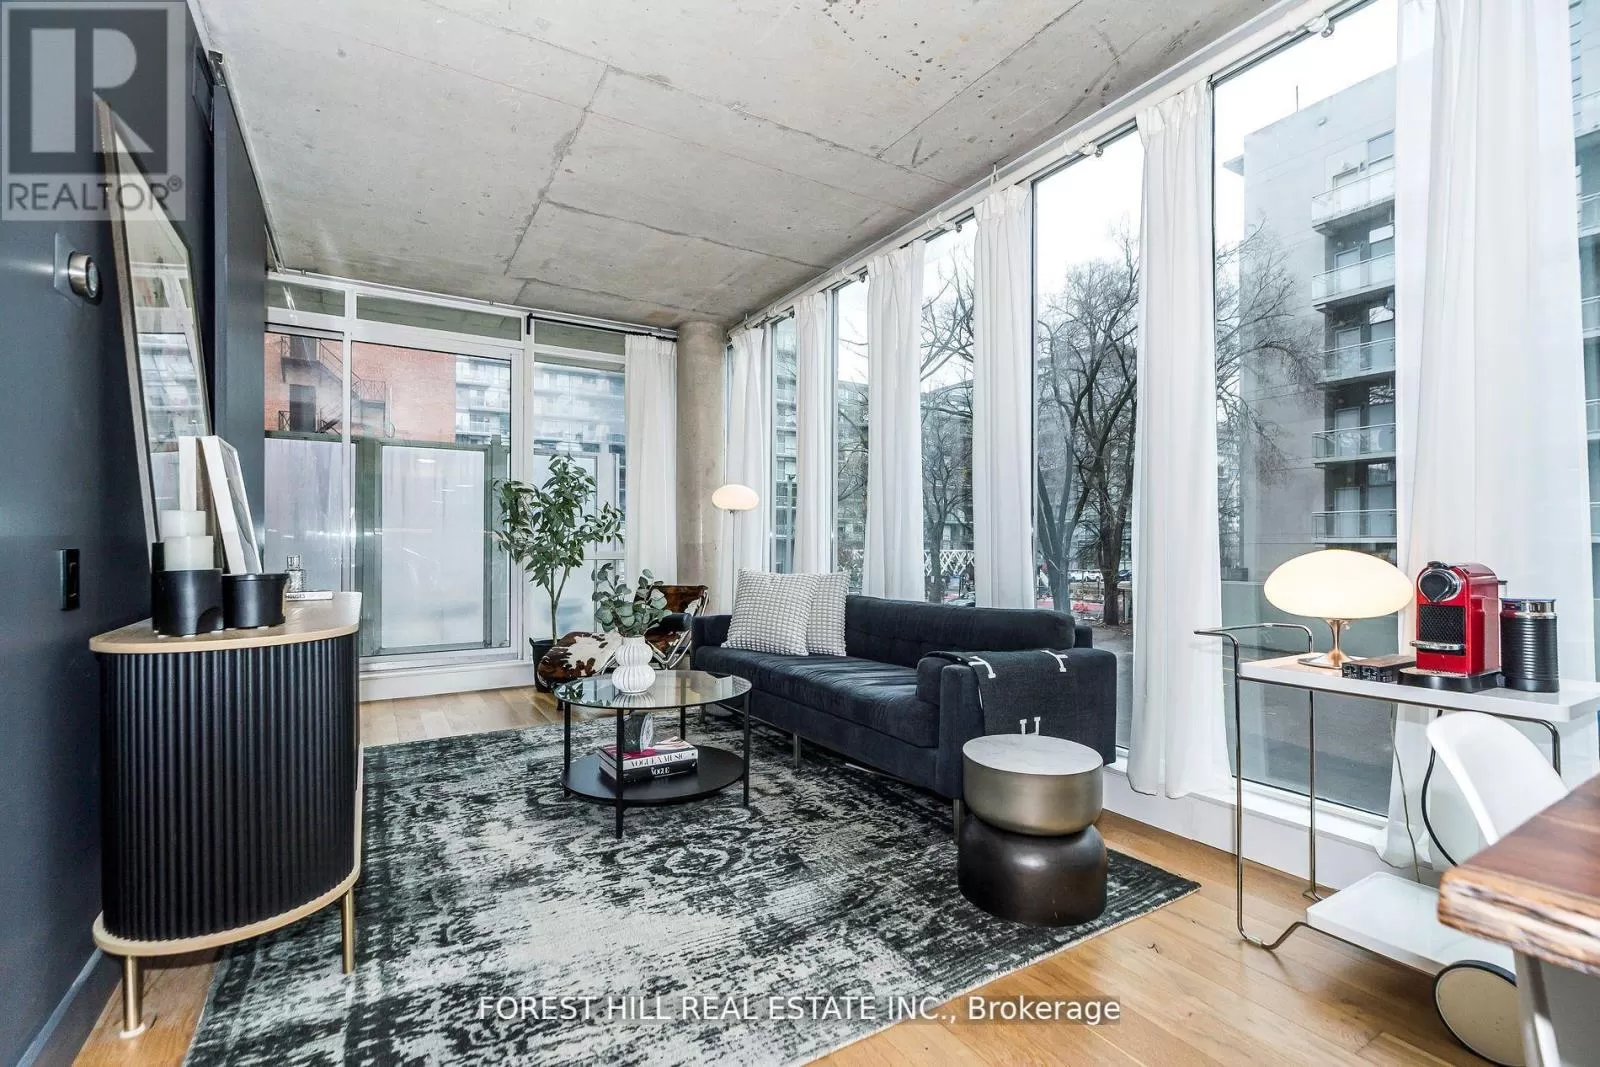 Apartment for rent: 211 - 38 Niagara Street, Toronto, Ontario M5V 3X1